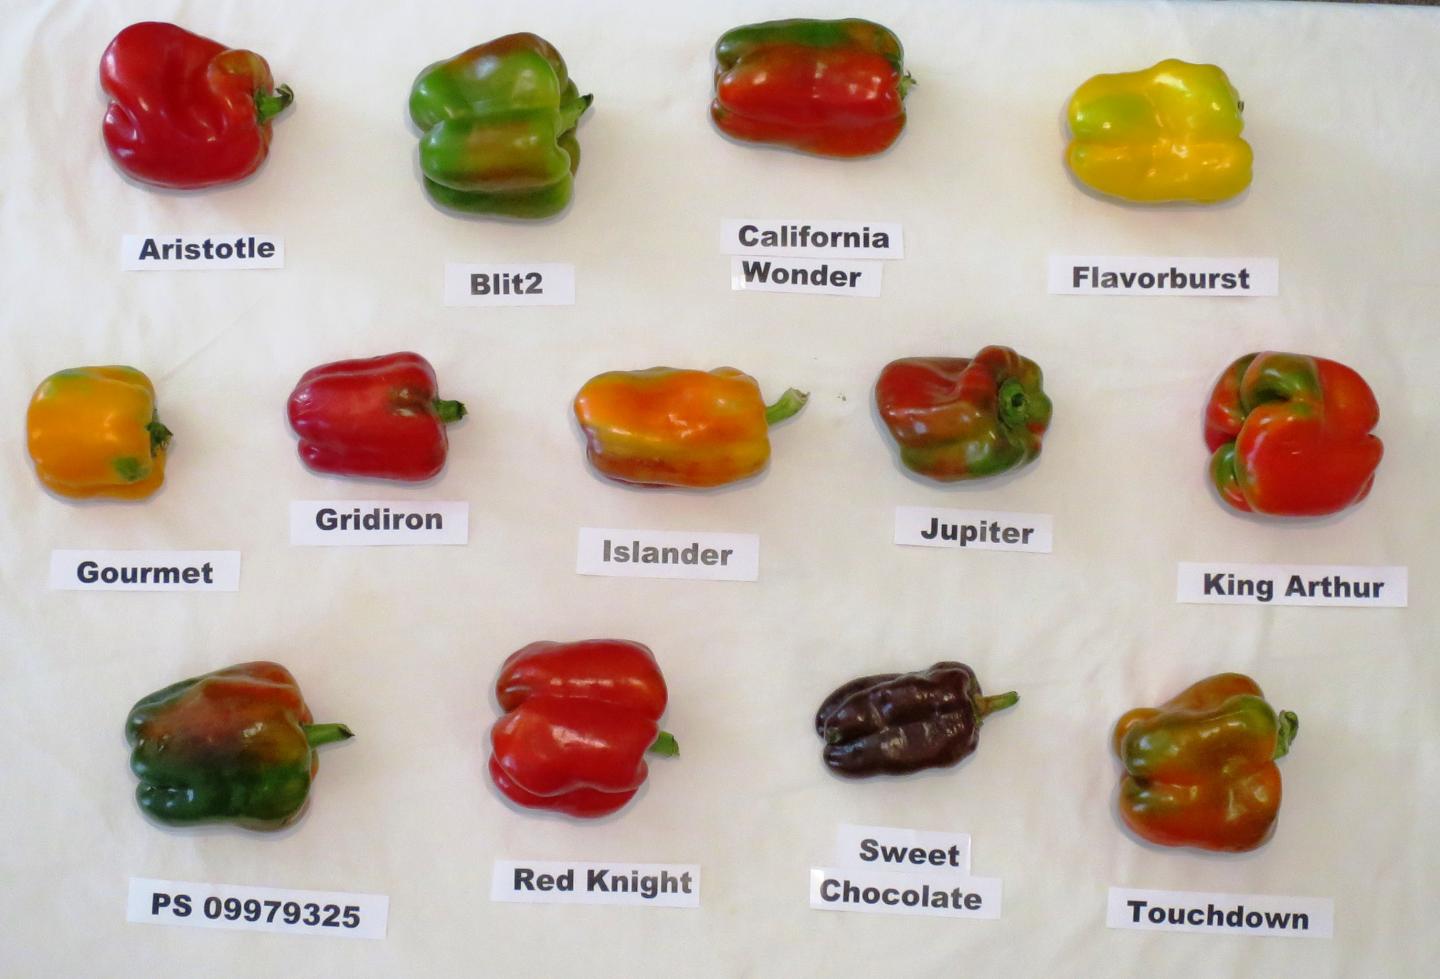 Pepper Varieties Used in Organic Study